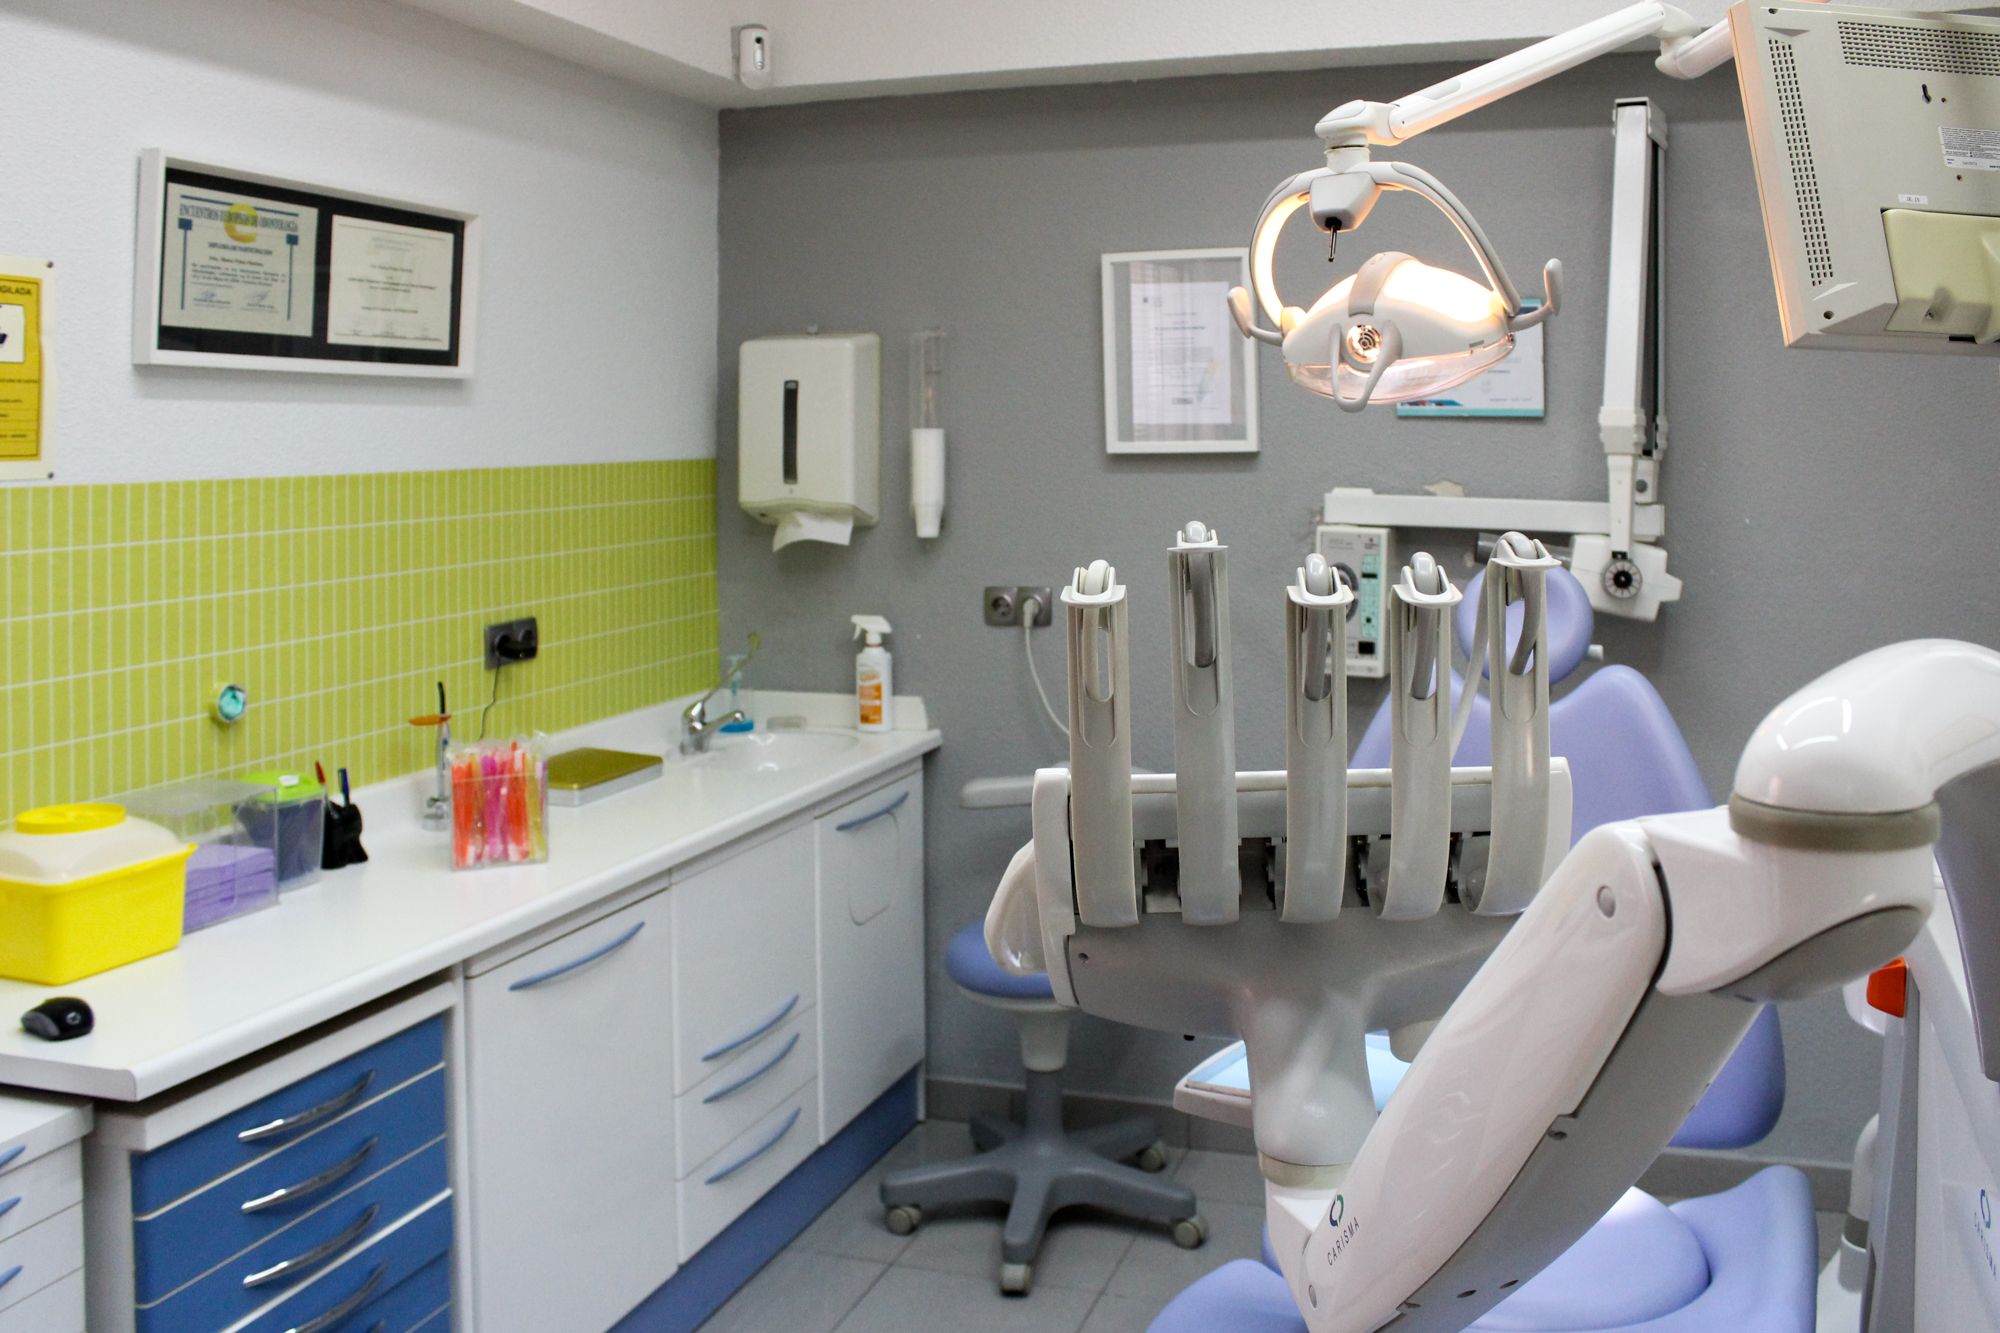 Foto 8 de Dentistas en Madrid | Clínica BP Bucal y Podológica